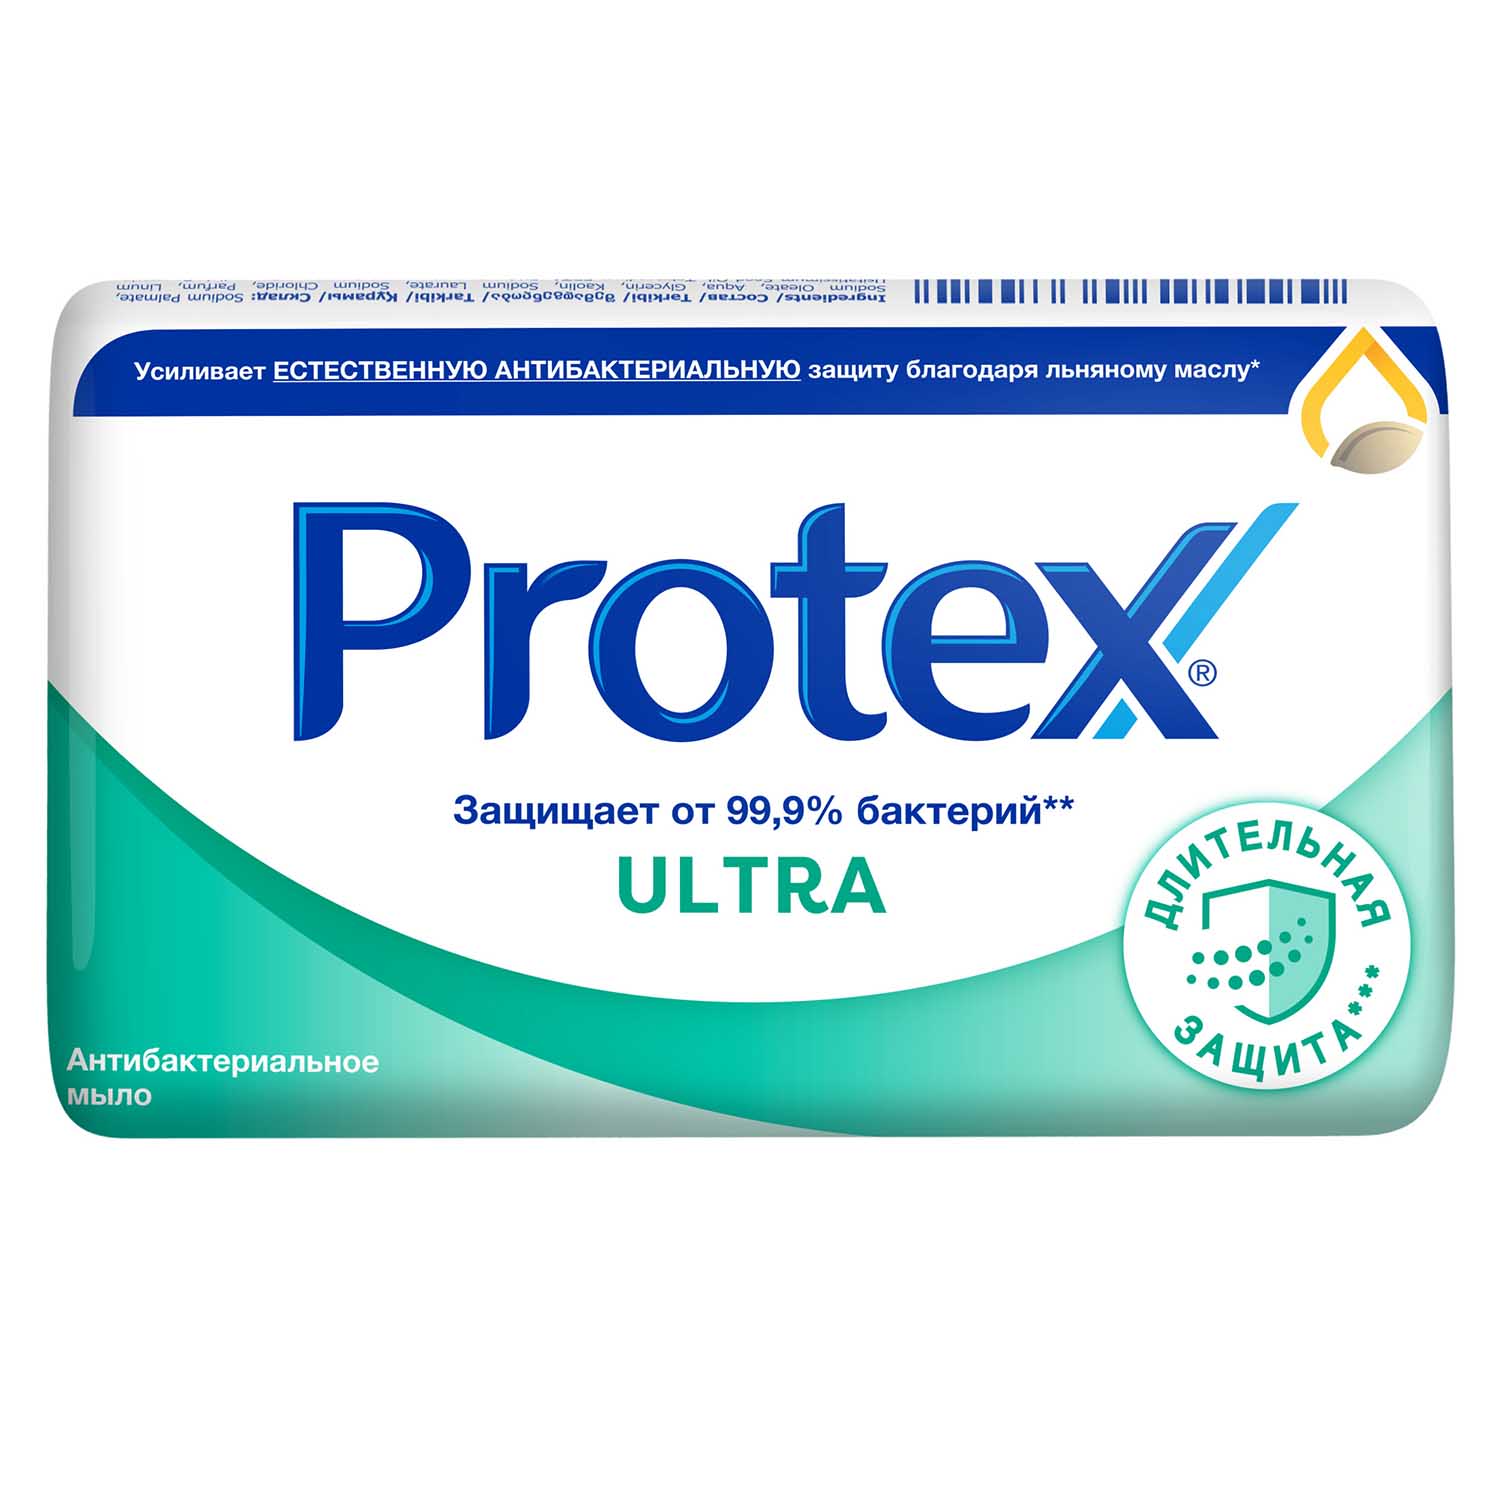 Мыло туалетное Protex Ultra Антибактериальное с льняным маслом, 90 гр мыло protex aloe антибактериальное 90 г